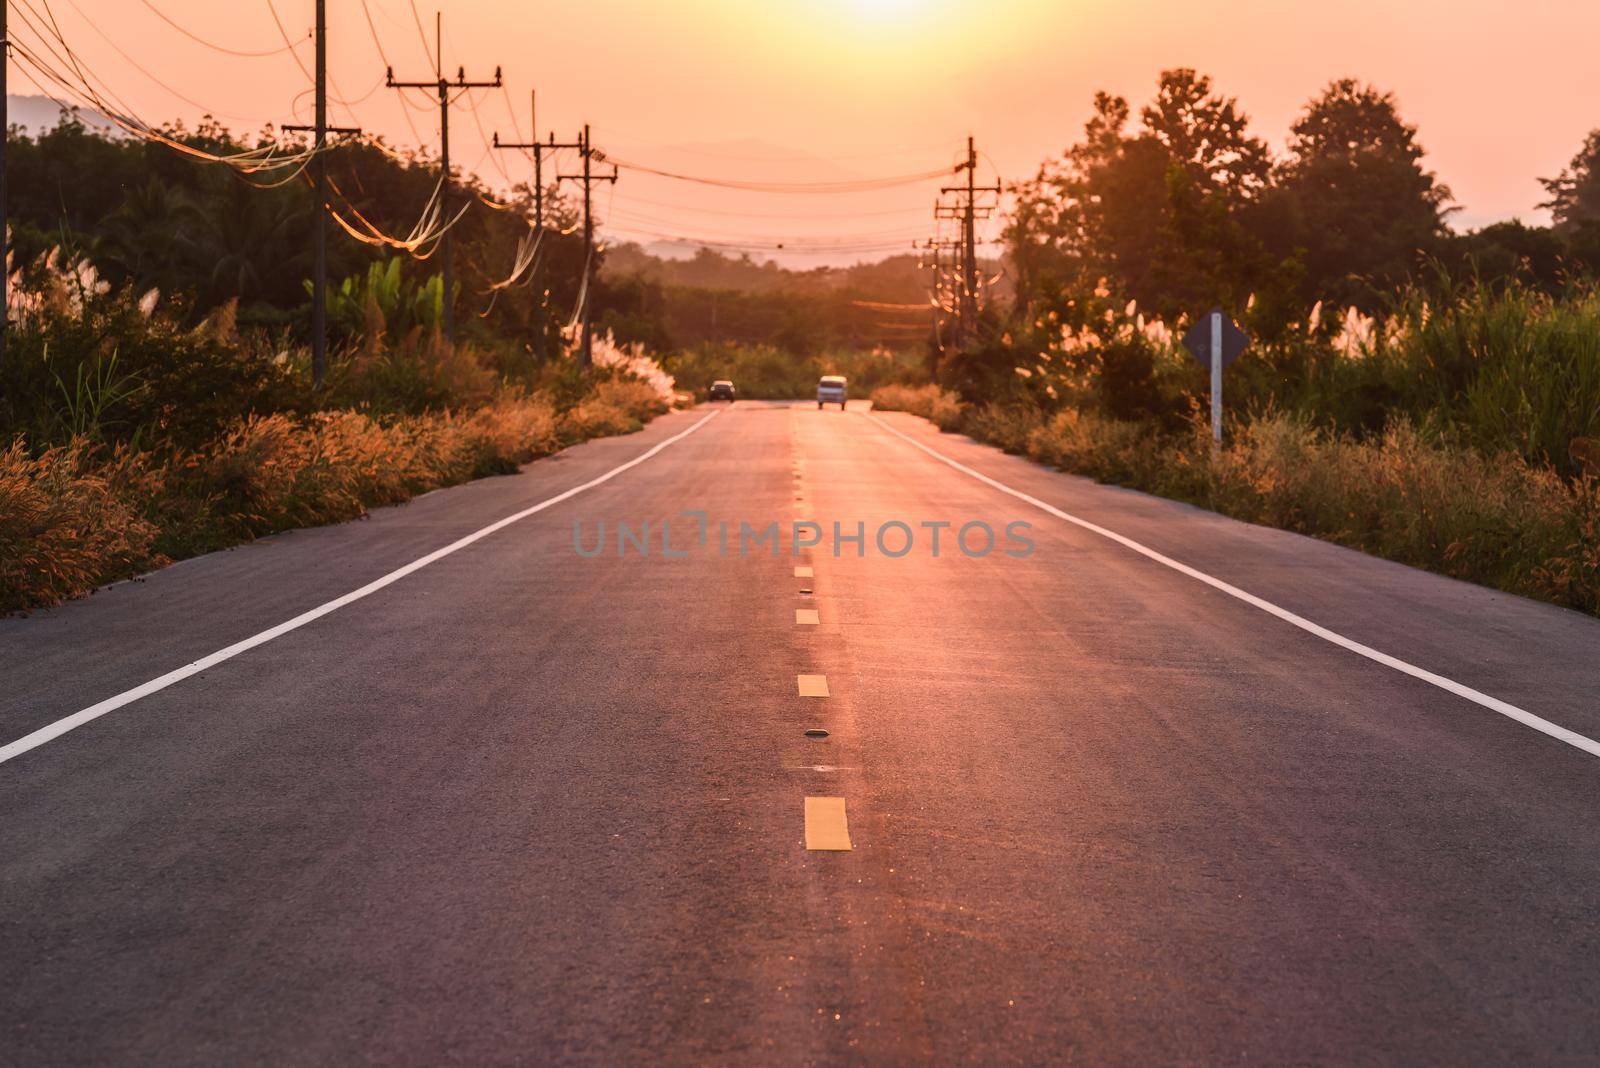 sunset over asphalt road